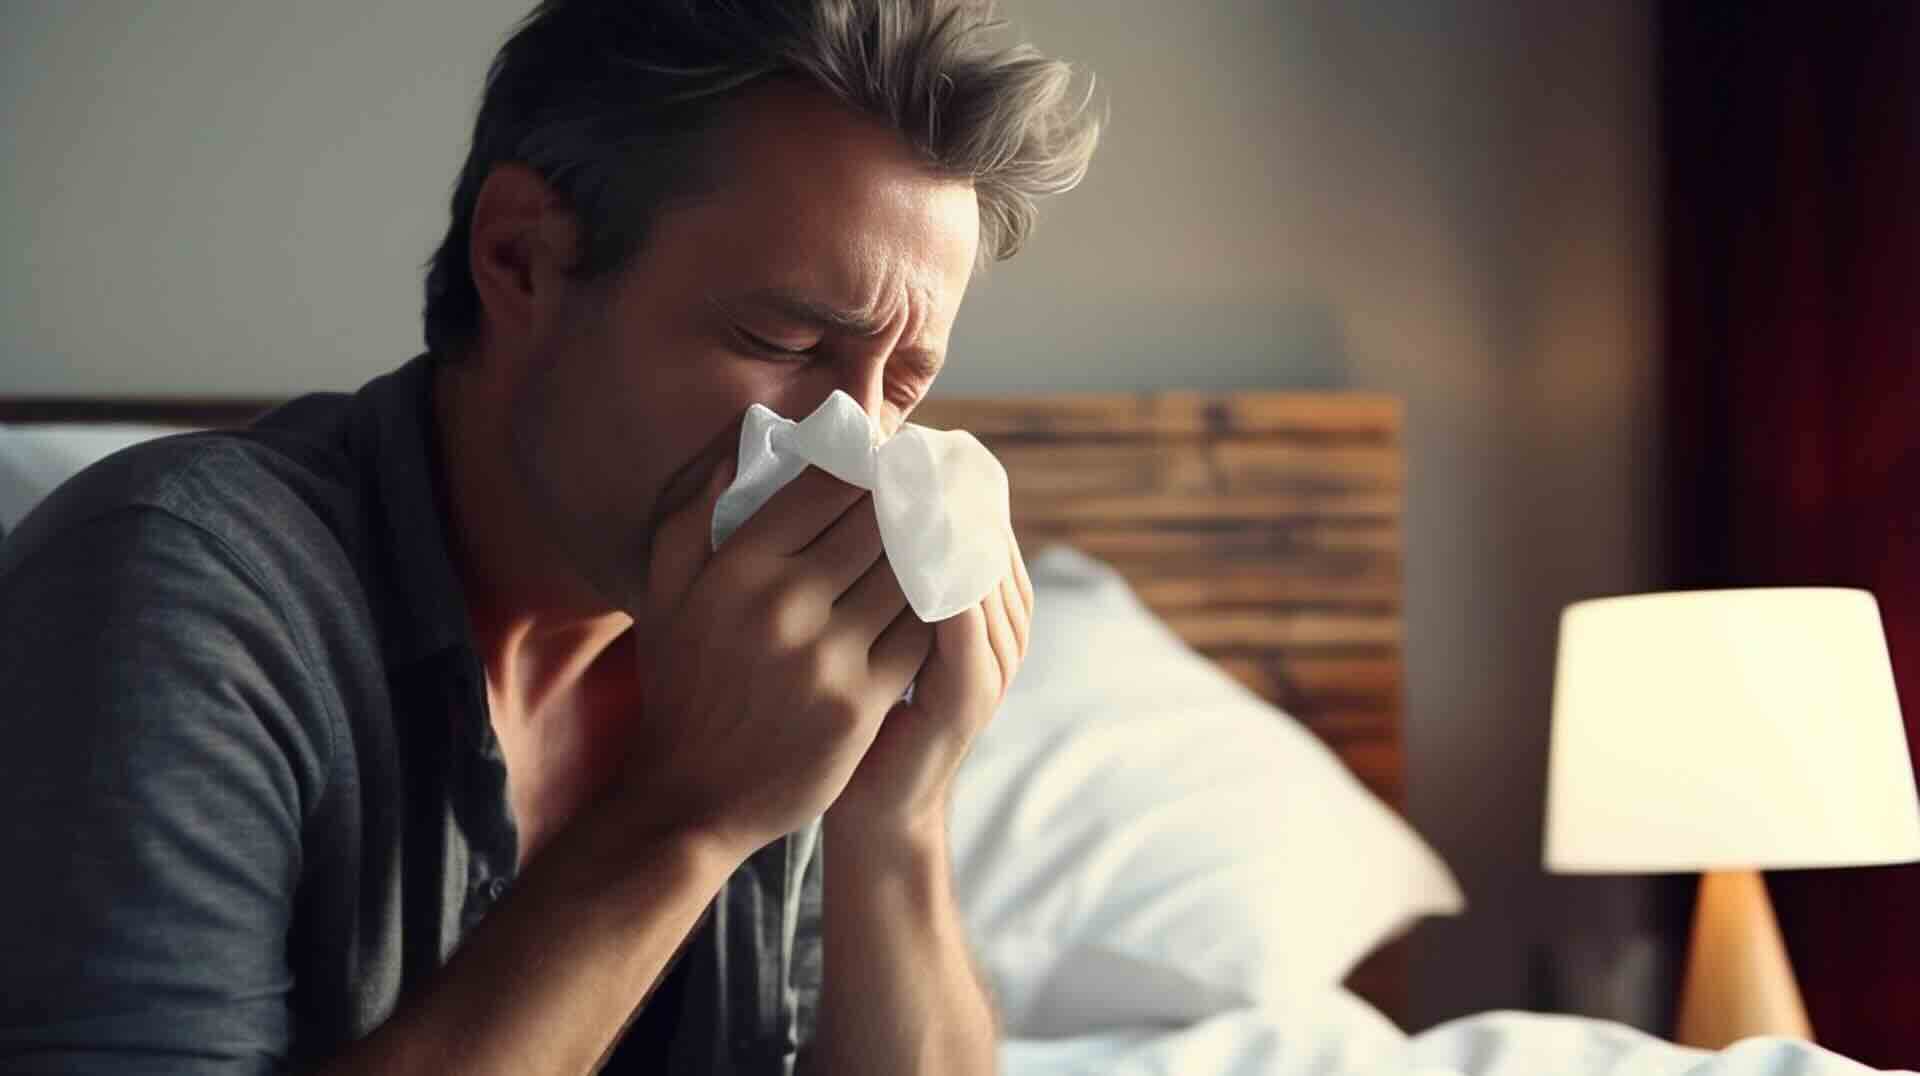 Man snuit neus op bed omdat hij verkouden is